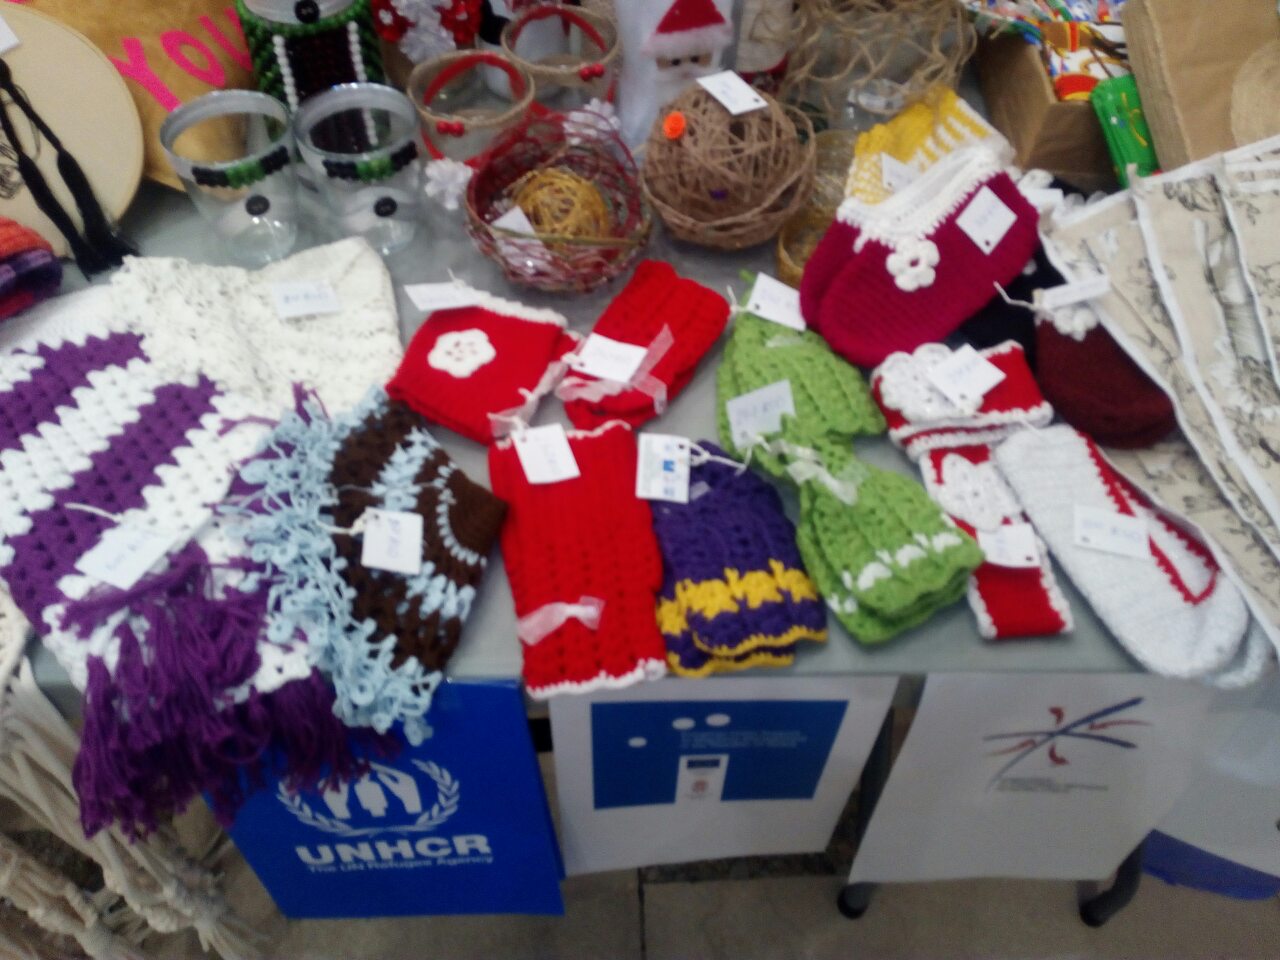 Humanitarian Christmas Bazaar of handcrafts opened today